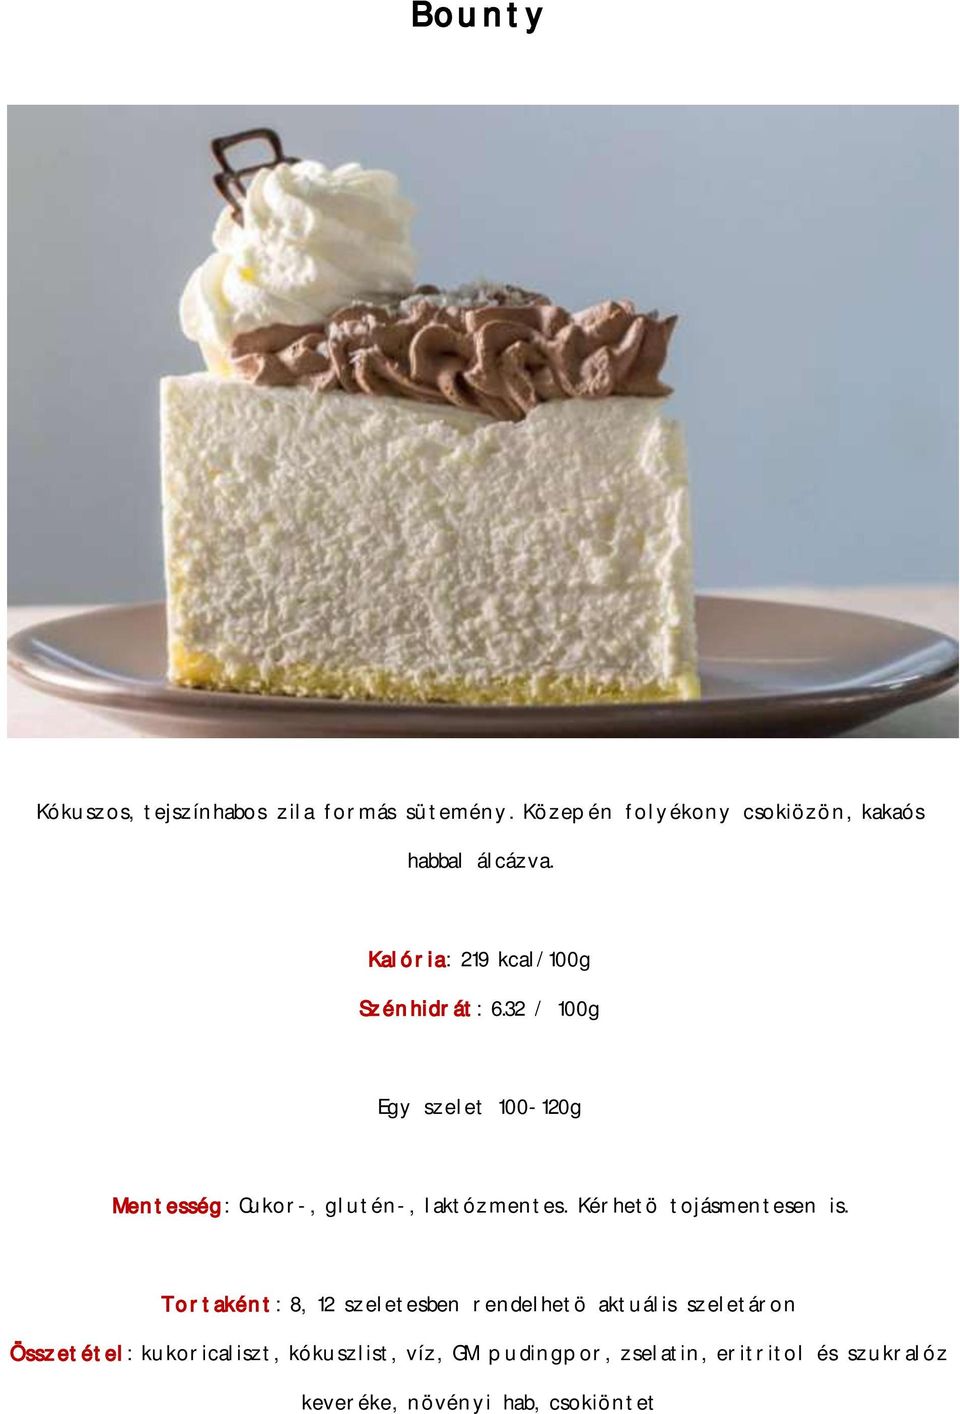 Bounty. Kókuszos, tejszínhabos zila formás sütemény. Közepén folyékony  csokiözön, kakaós habbal álcázva. - PDF Free Download